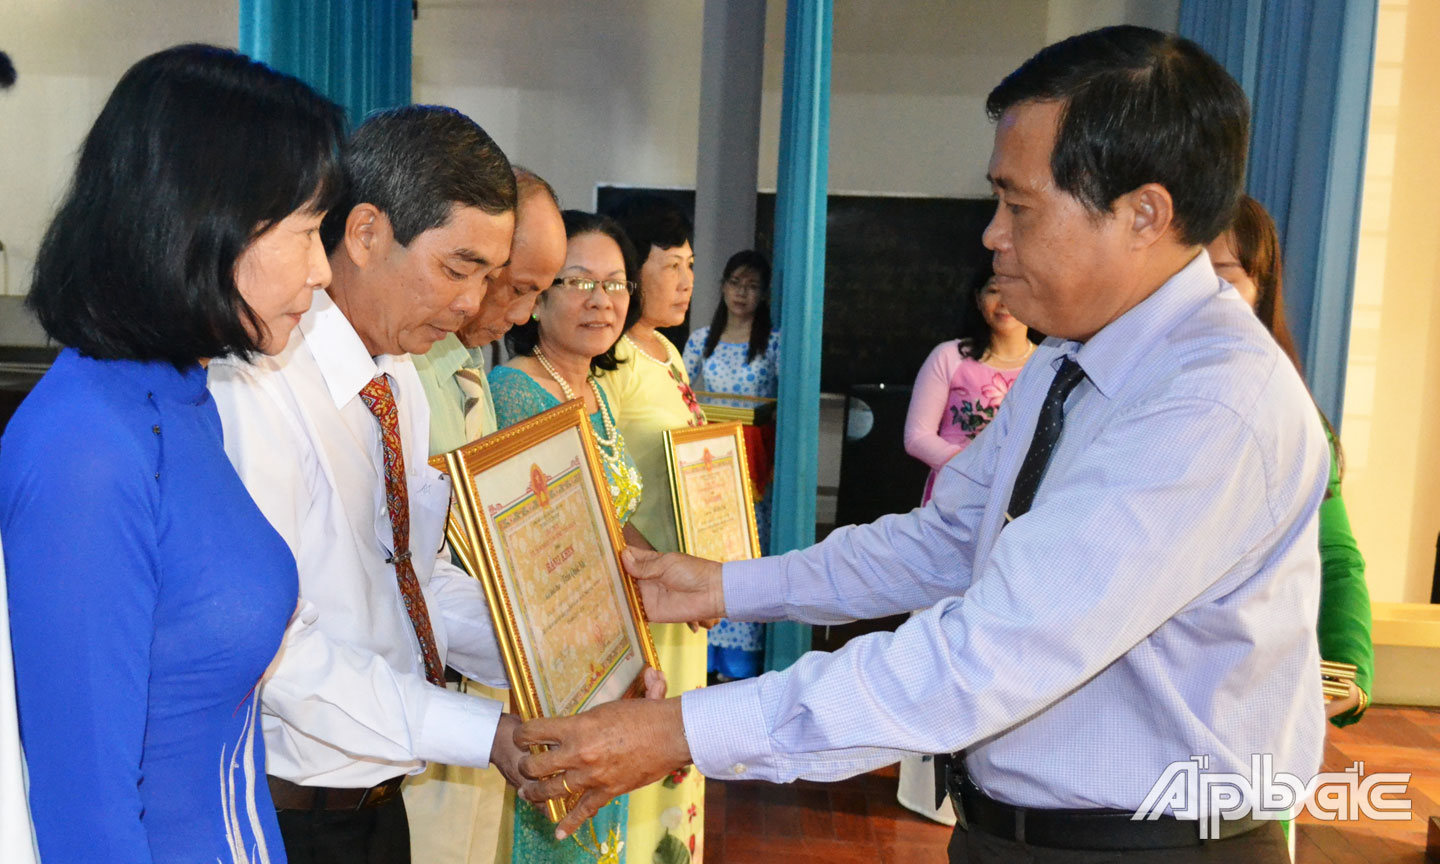  Giám đốc Sở VH-TT&DL Nguyễn Đức Đảm trao Bằng khen cho các gia đình văn hóa tiêu biểu nhiều năm liền.                                                                               Ảnh: THU HOÀI